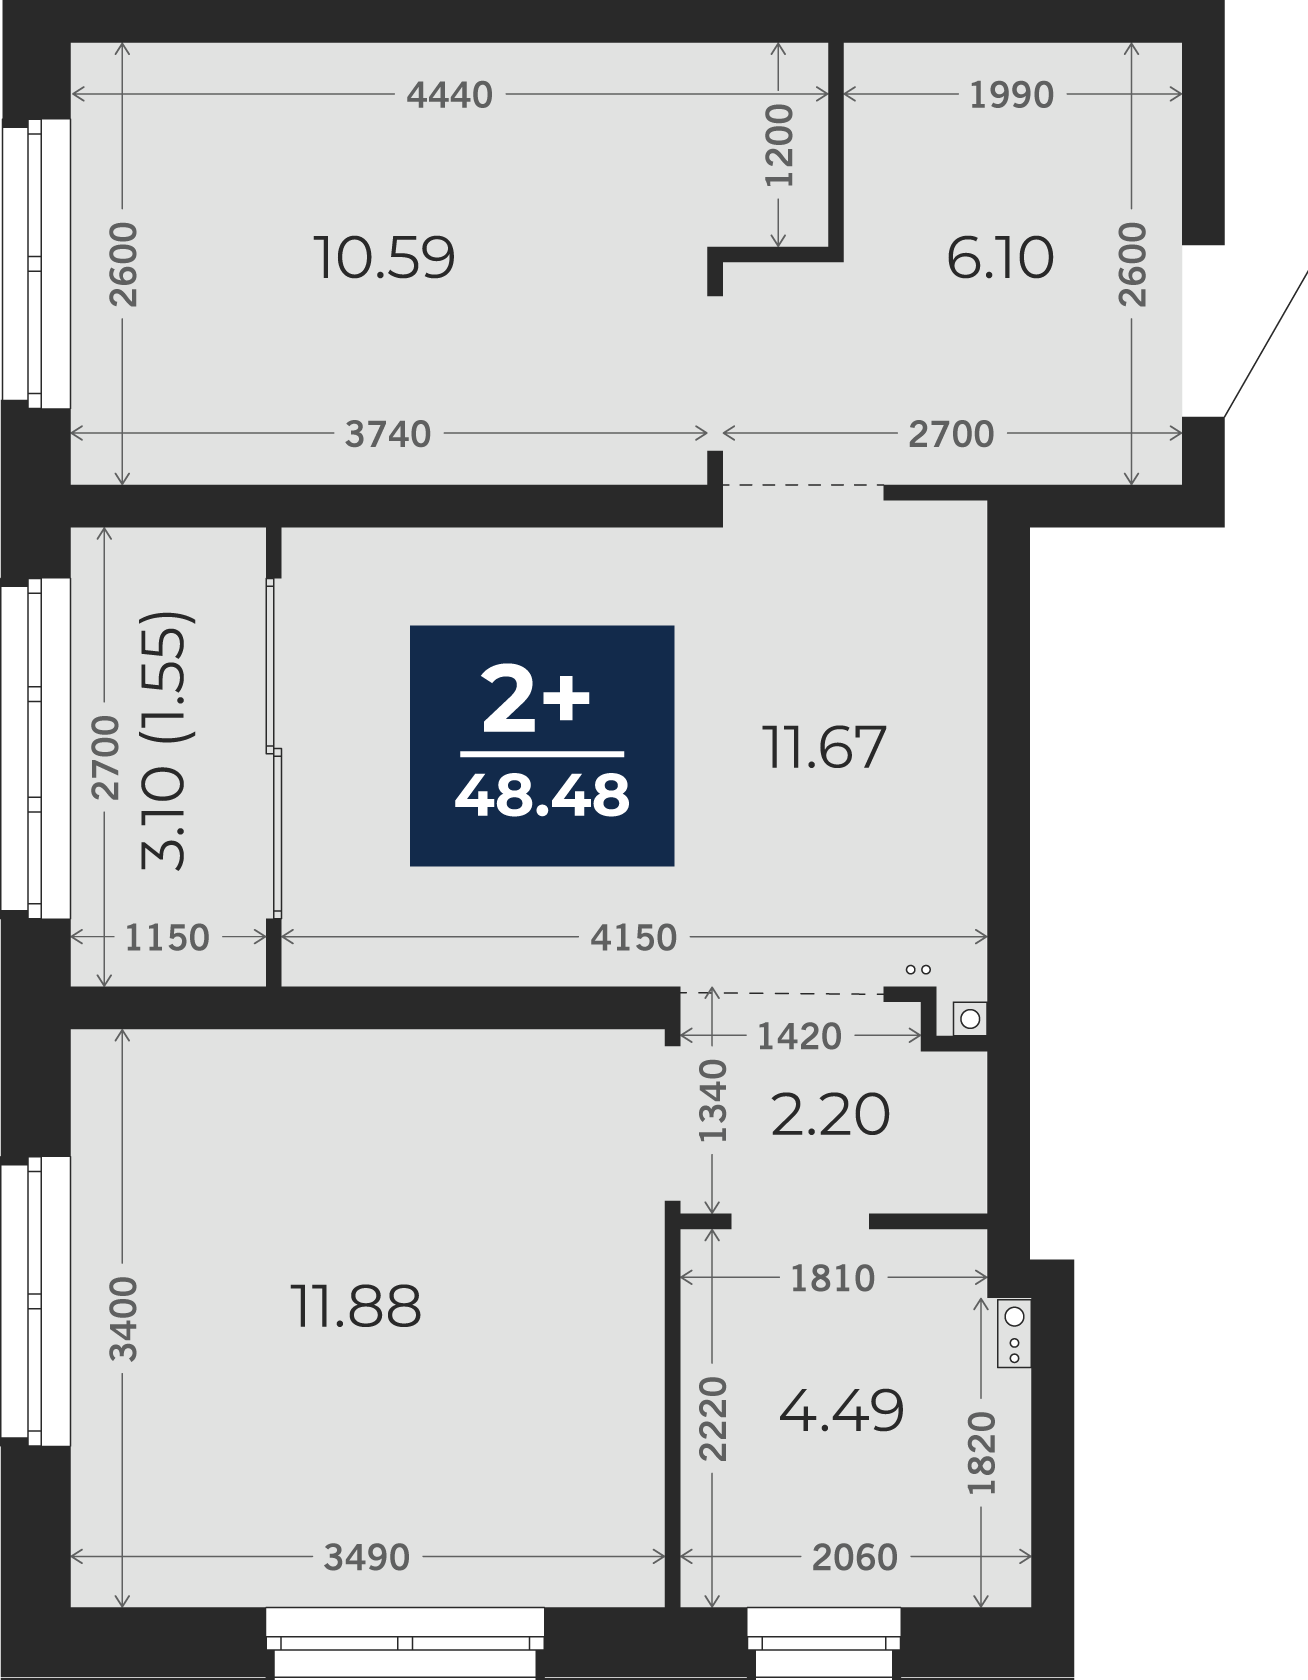 Квартира № 67, 2-комнатная, 48.48 кв. м, 6 этаж